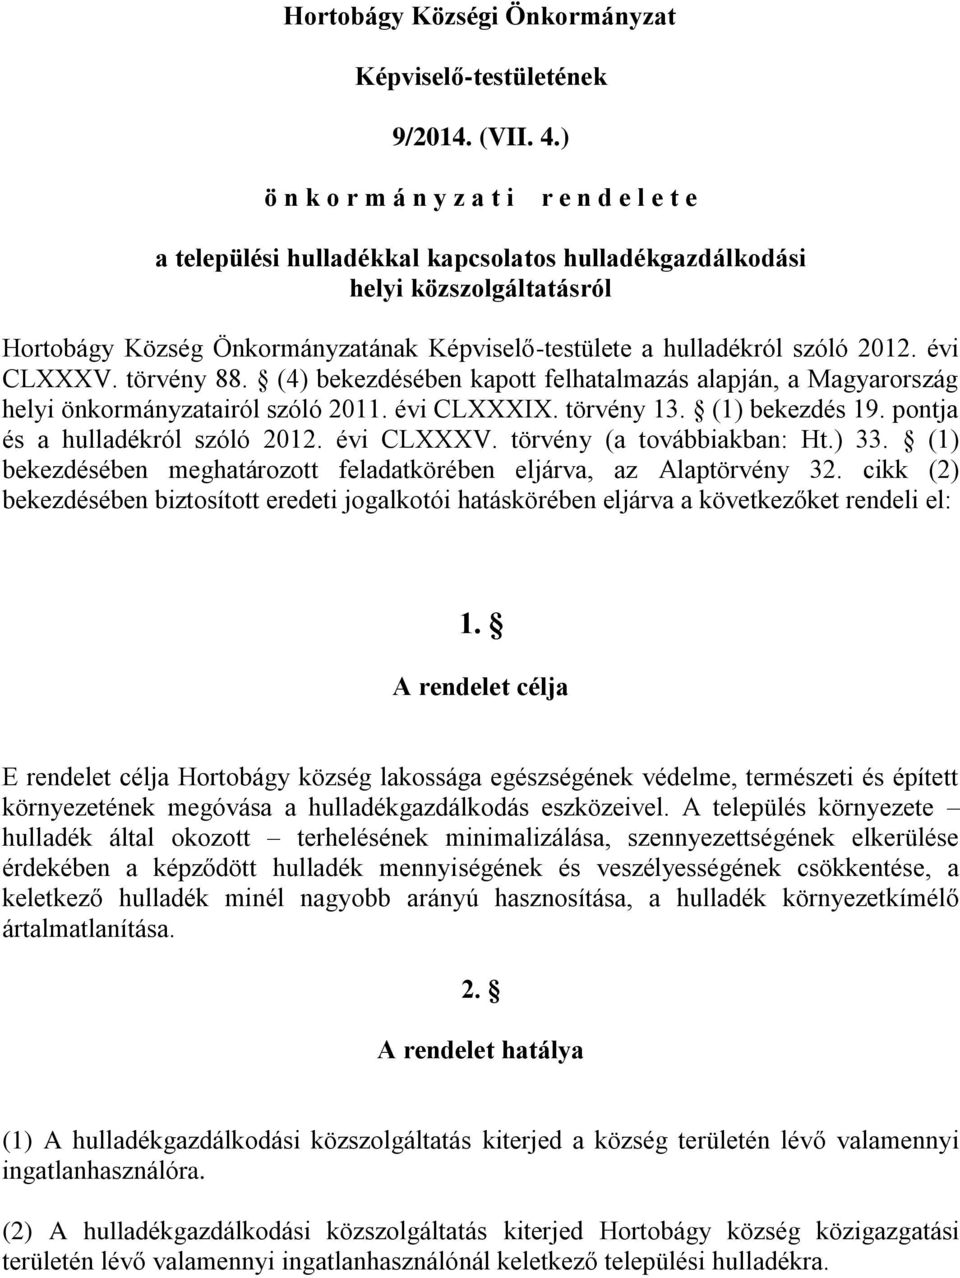 szóló 2012. évi CLXXXV. törvény 88. (4) bekezdésében kapott felhatalmazás alapján, a Magyarország helyi önkormányzatairól szóló 2011. évi CLXXXIX. törvény 13. (1) bekezdés 19.